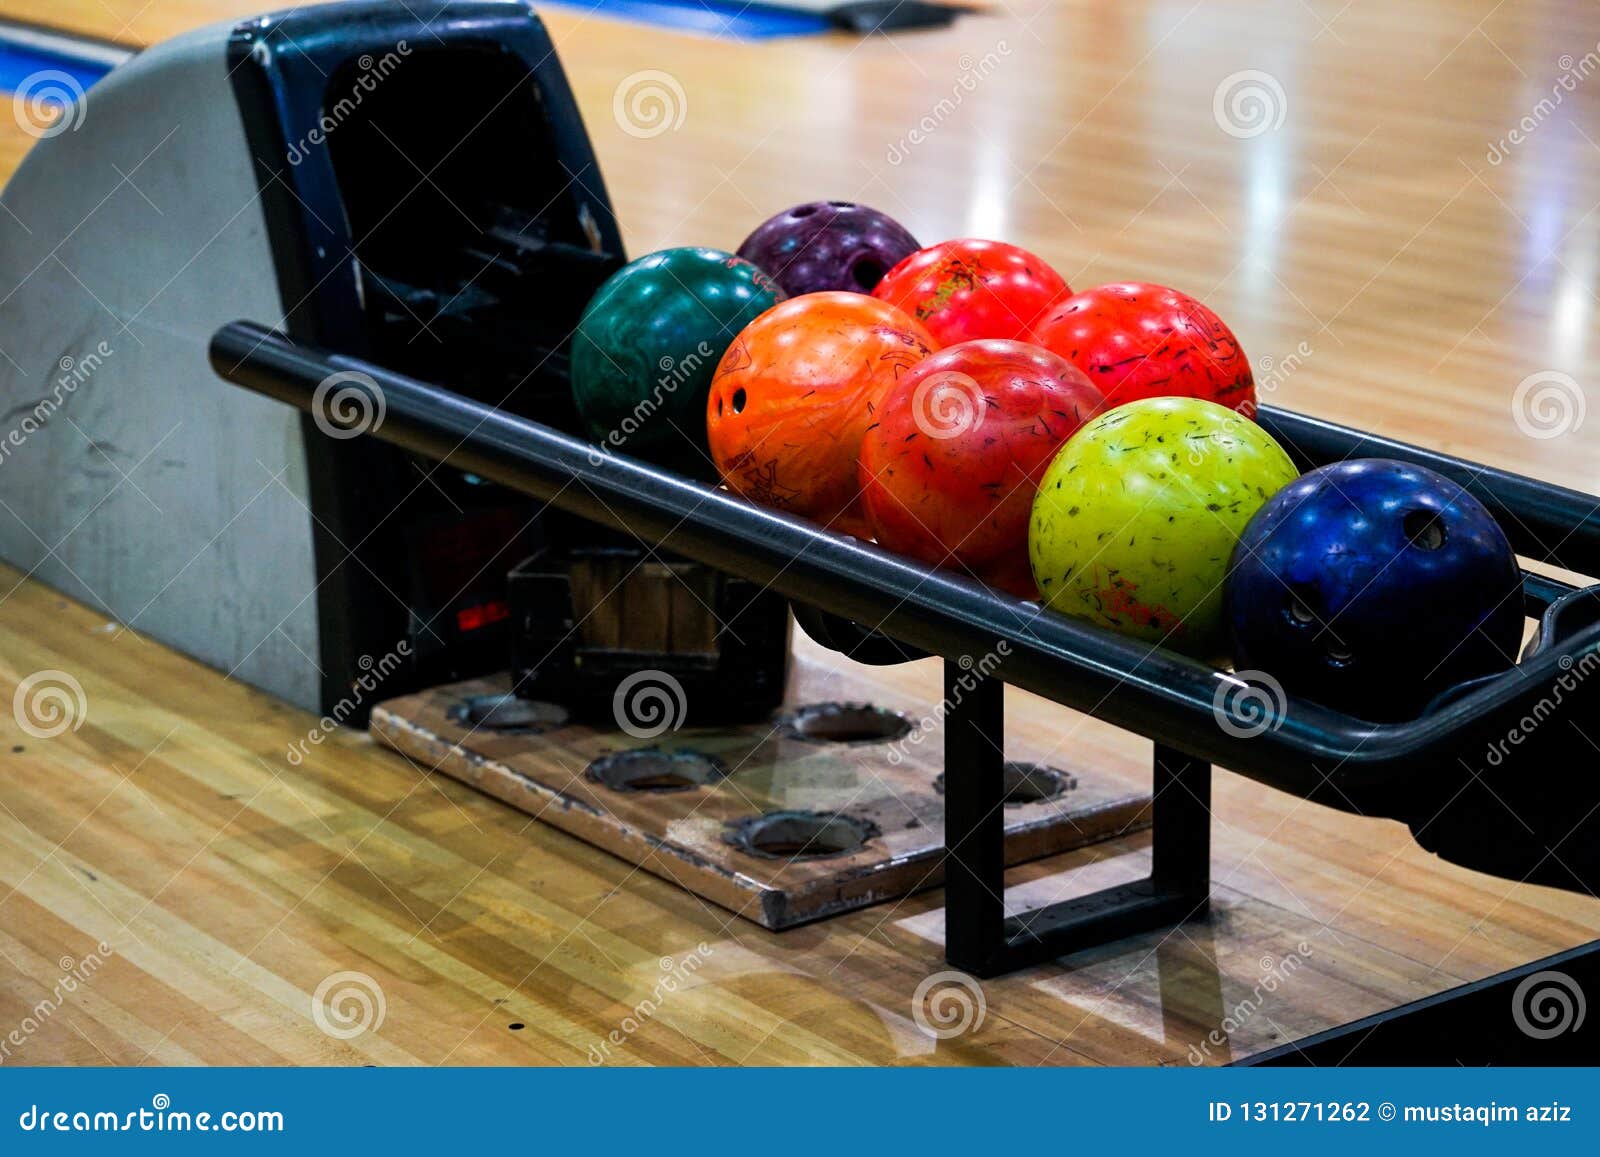 Le palle da bowling. Sette palle da bowling inutilizzate con varietà di colori sulla valle